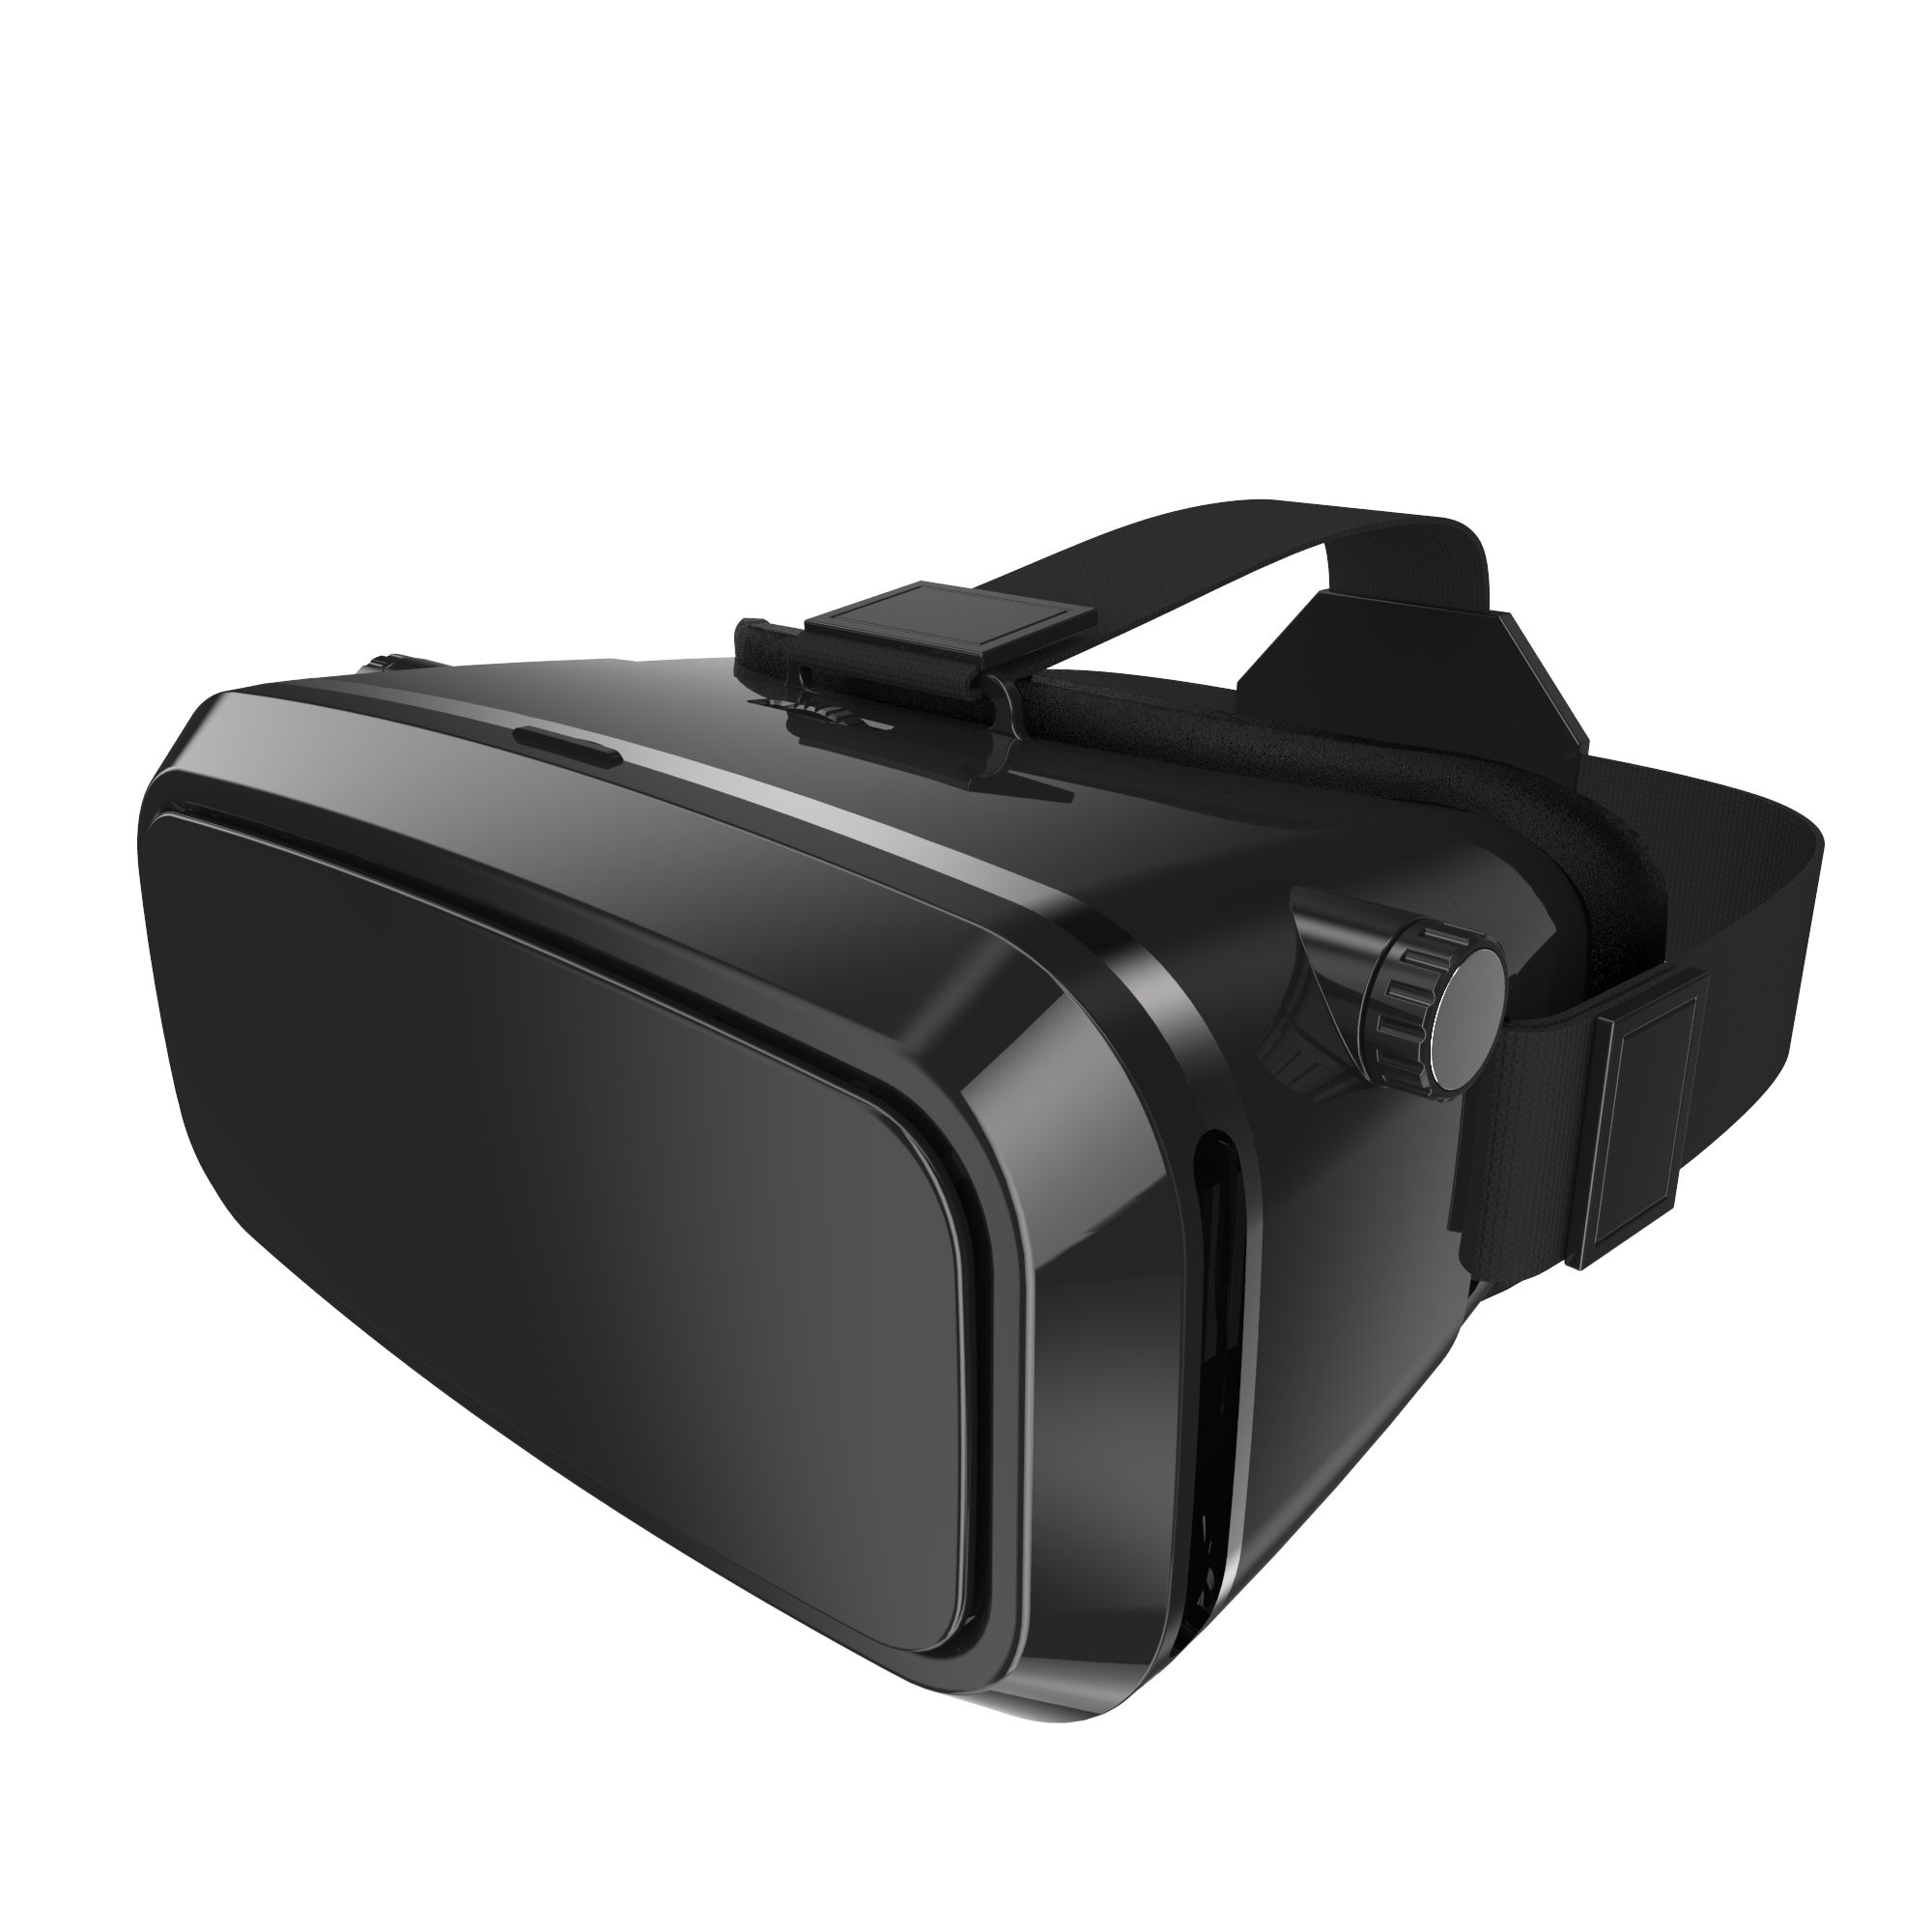 VR视力训练仪图片展示